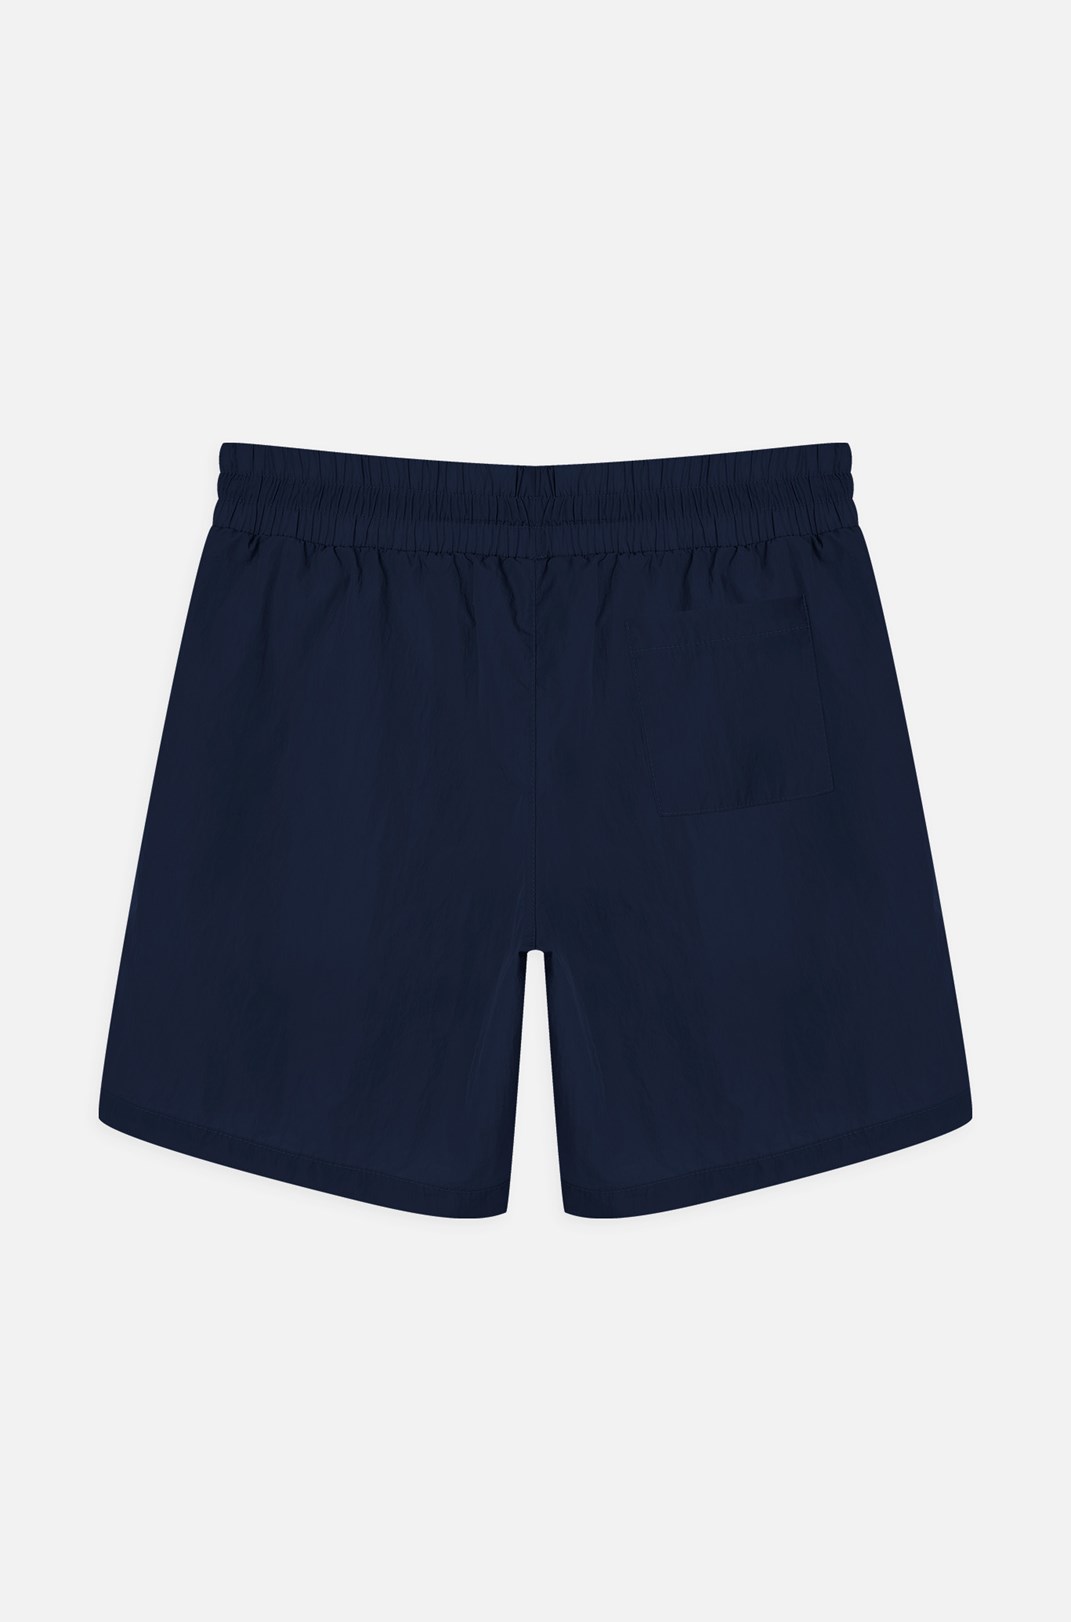 Shorts Approve Basic Azul Marinho